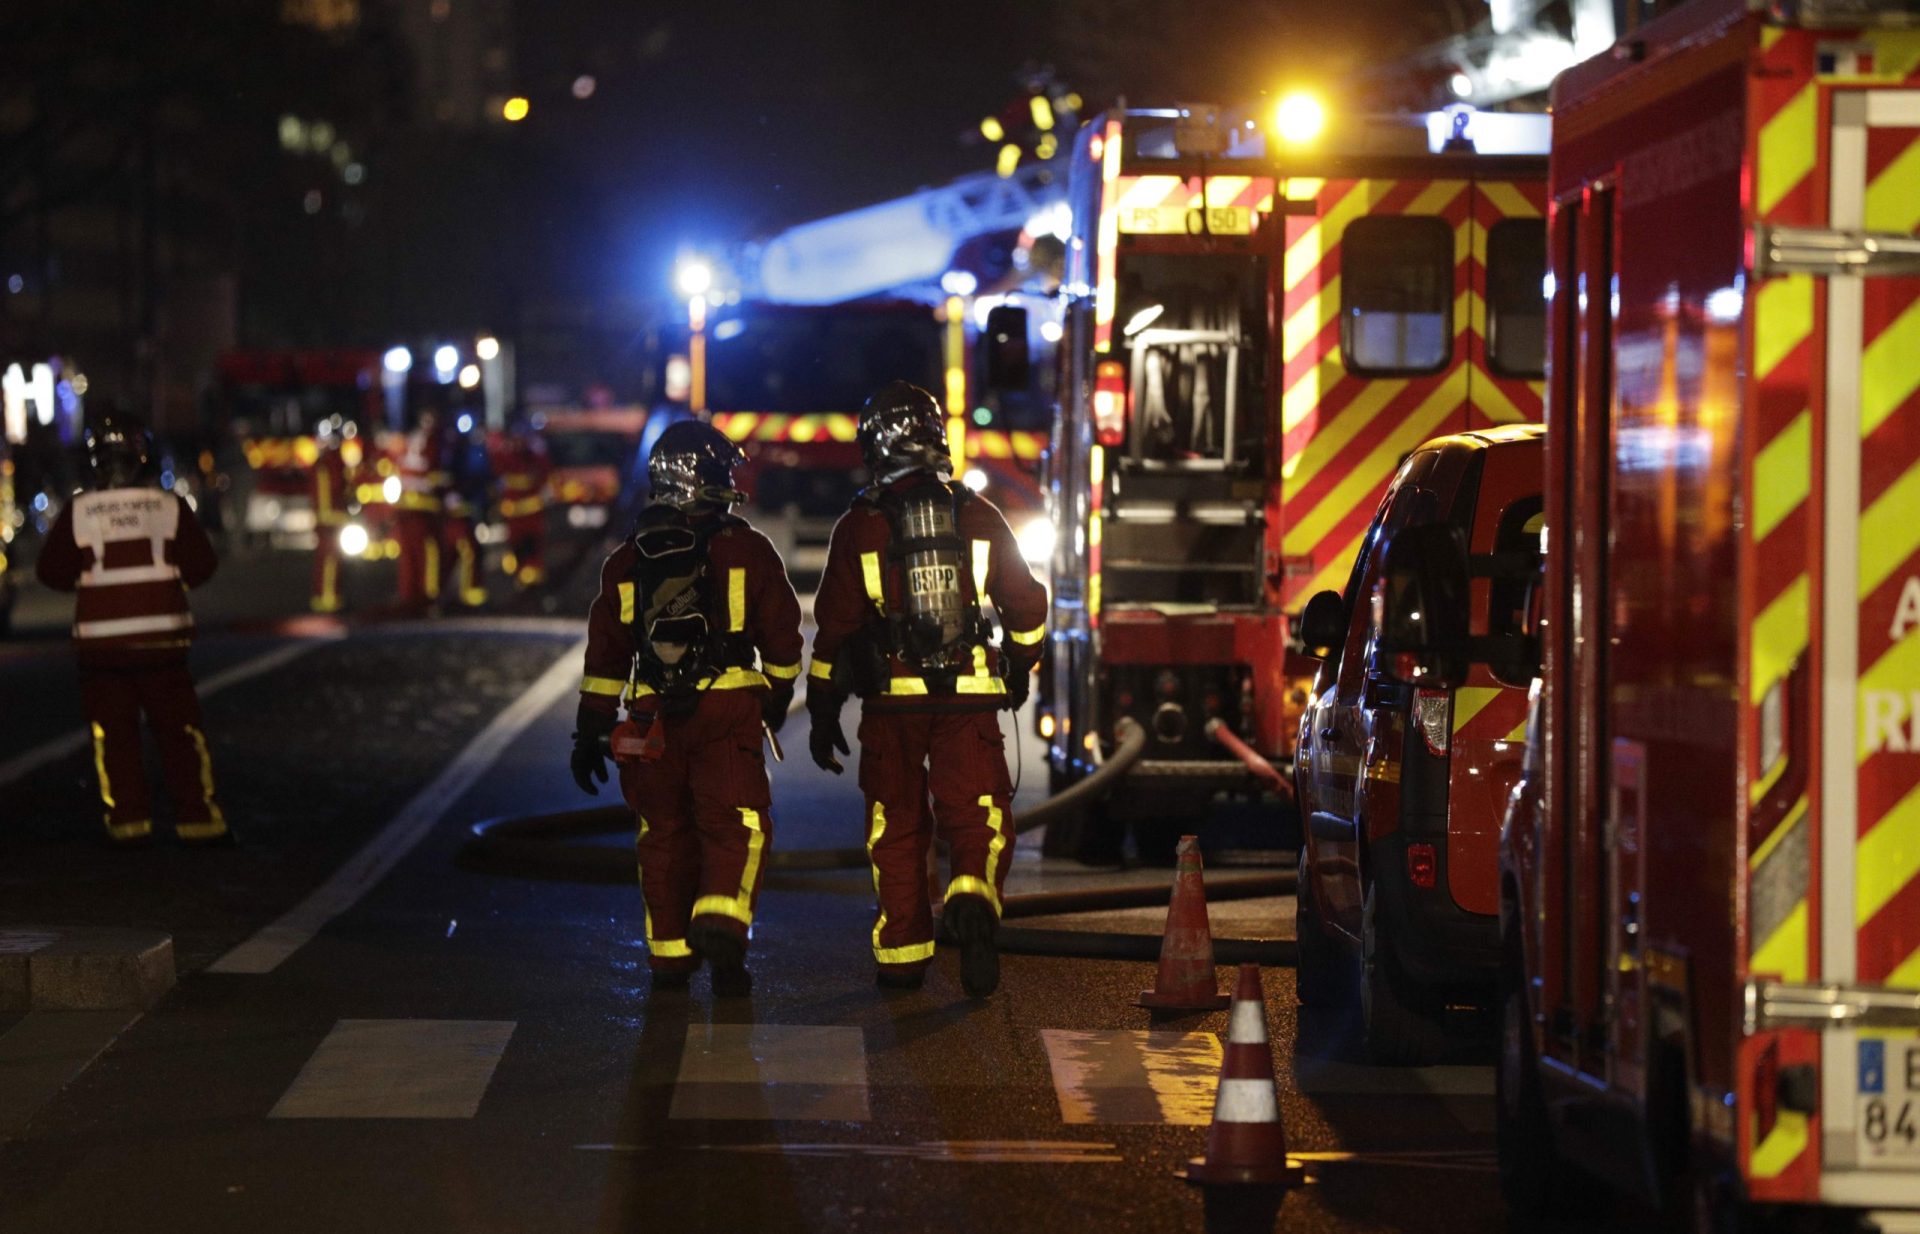 Imagens mostram explosão violenta em prédio de luxo em Paris